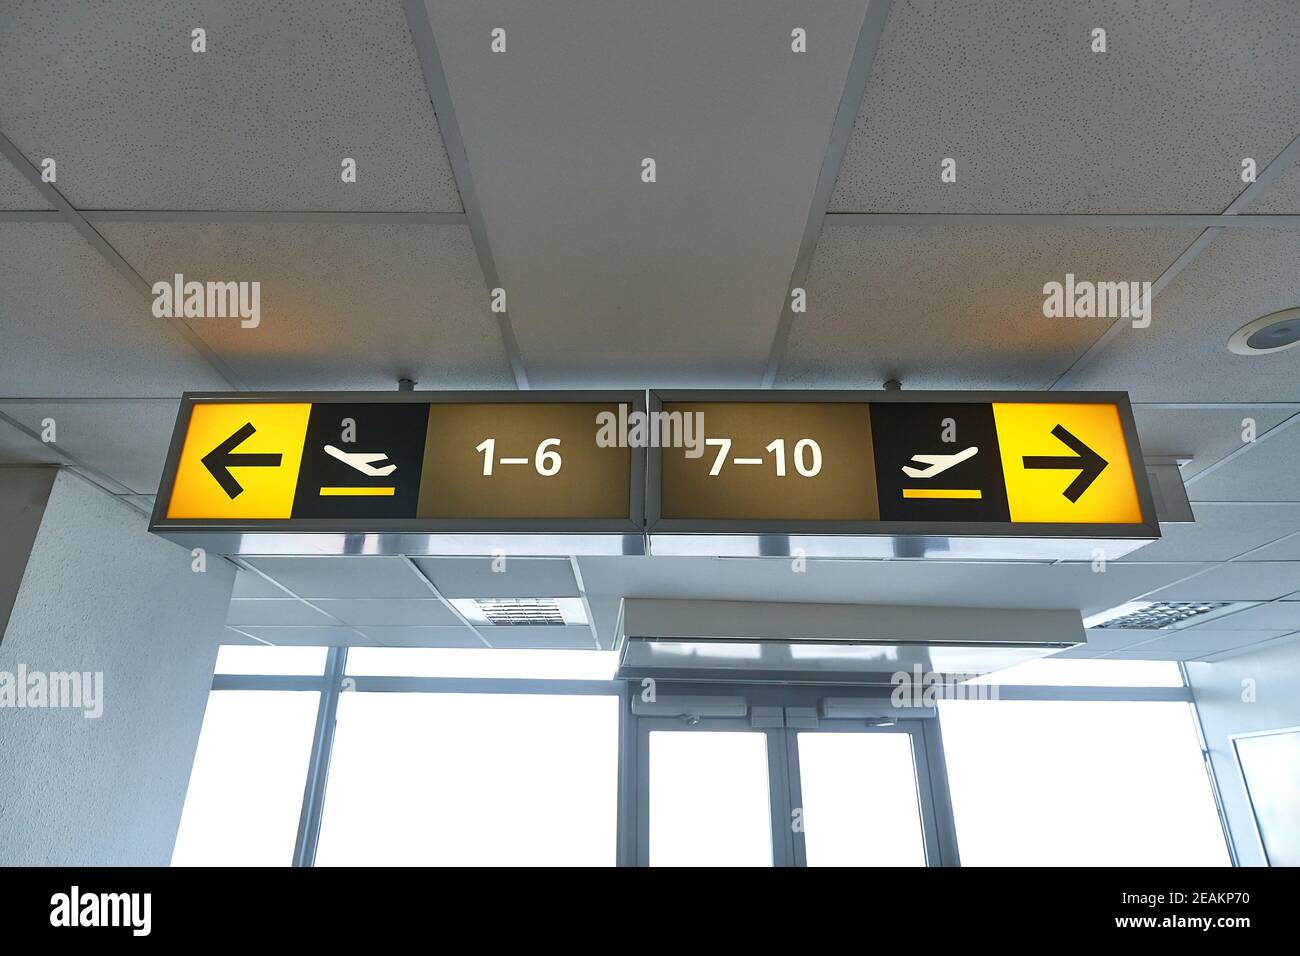 Flughafen Abflug gates Zeichen Stockfoto